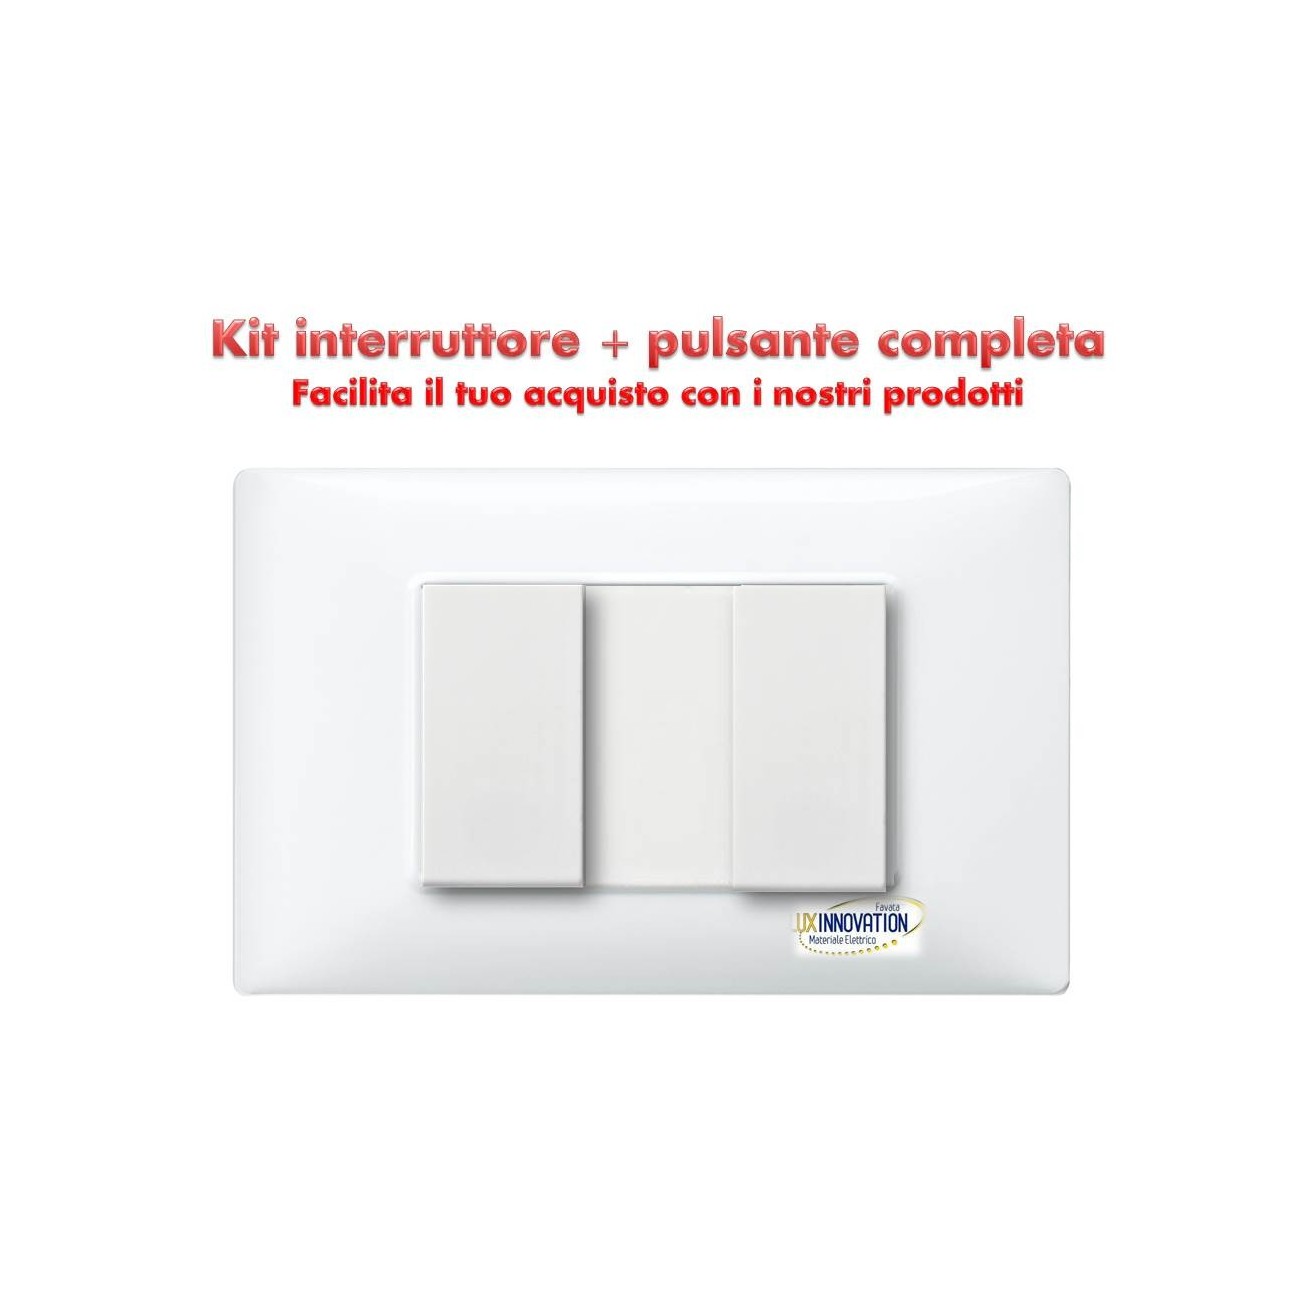 Interruttore + pulsante completo monoblocco con placca bianca compatibile  plana